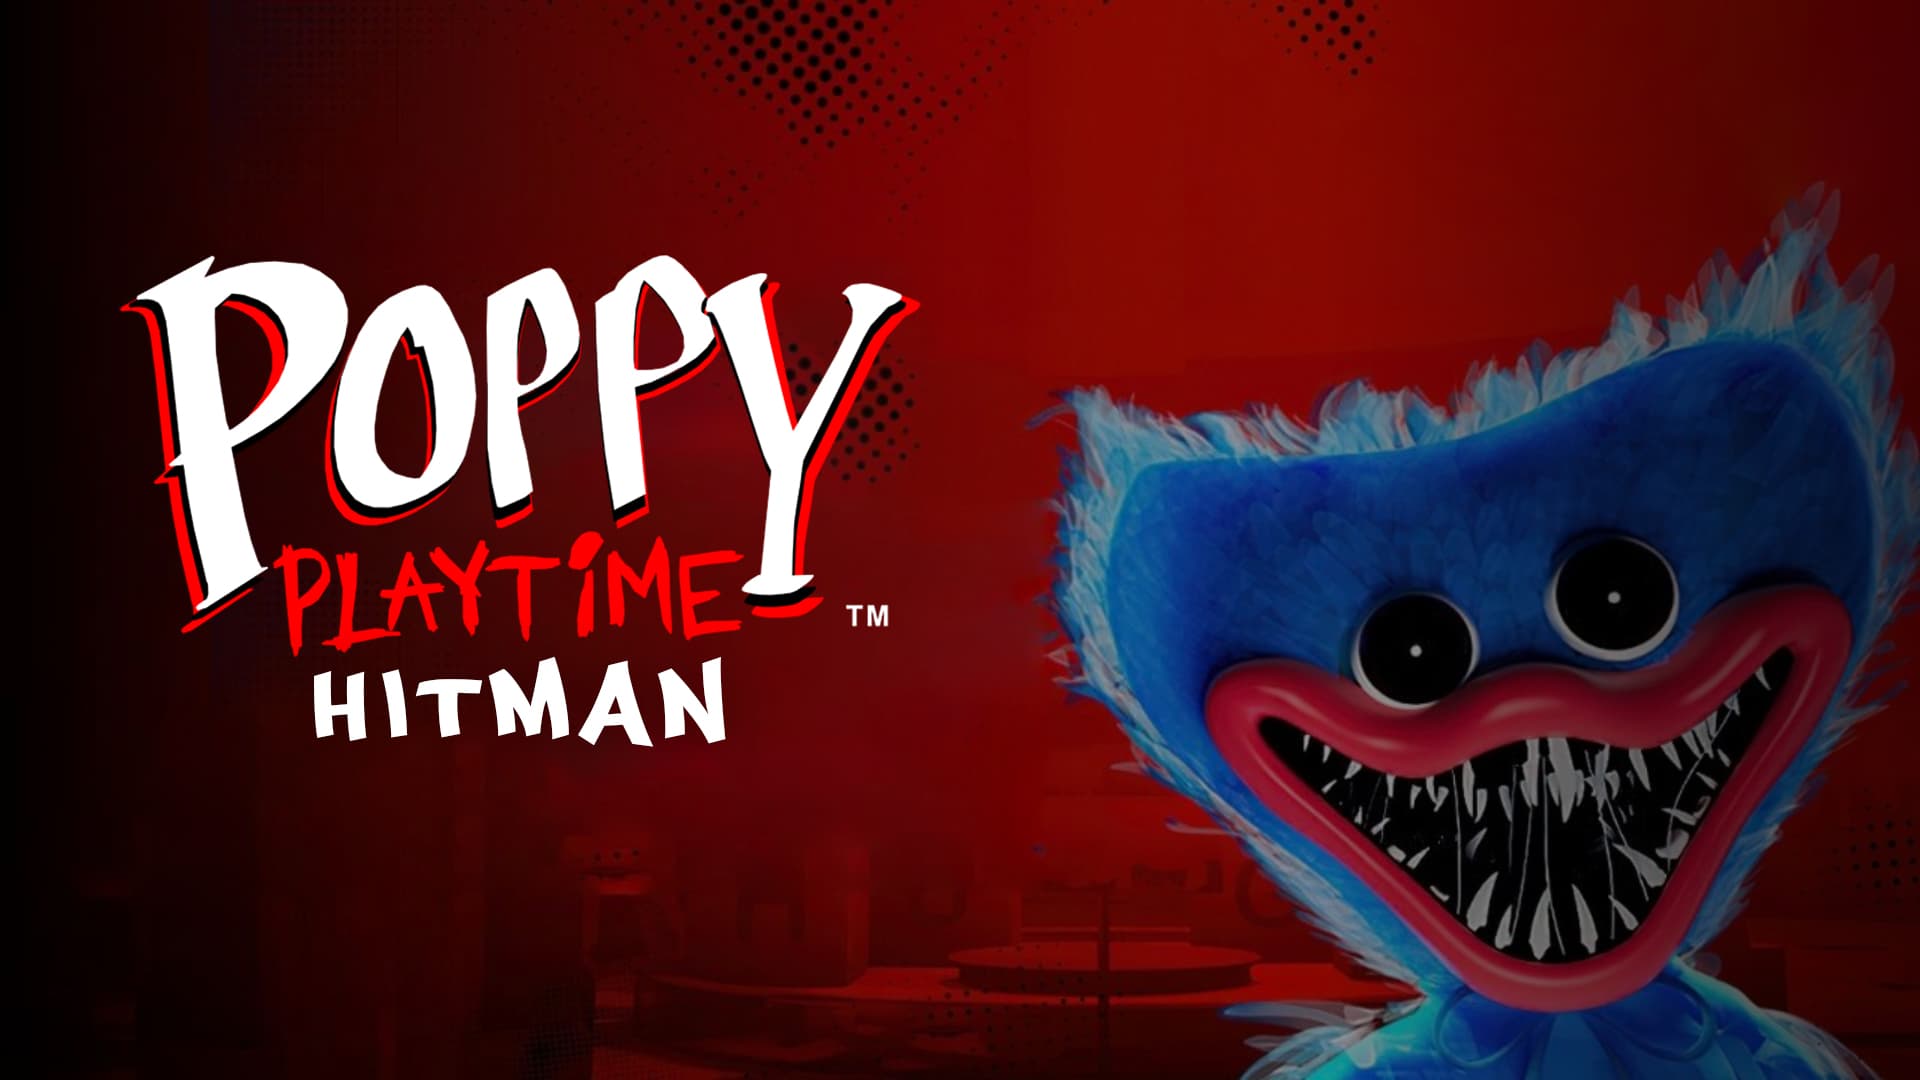 Poppy Playtime / Hitman